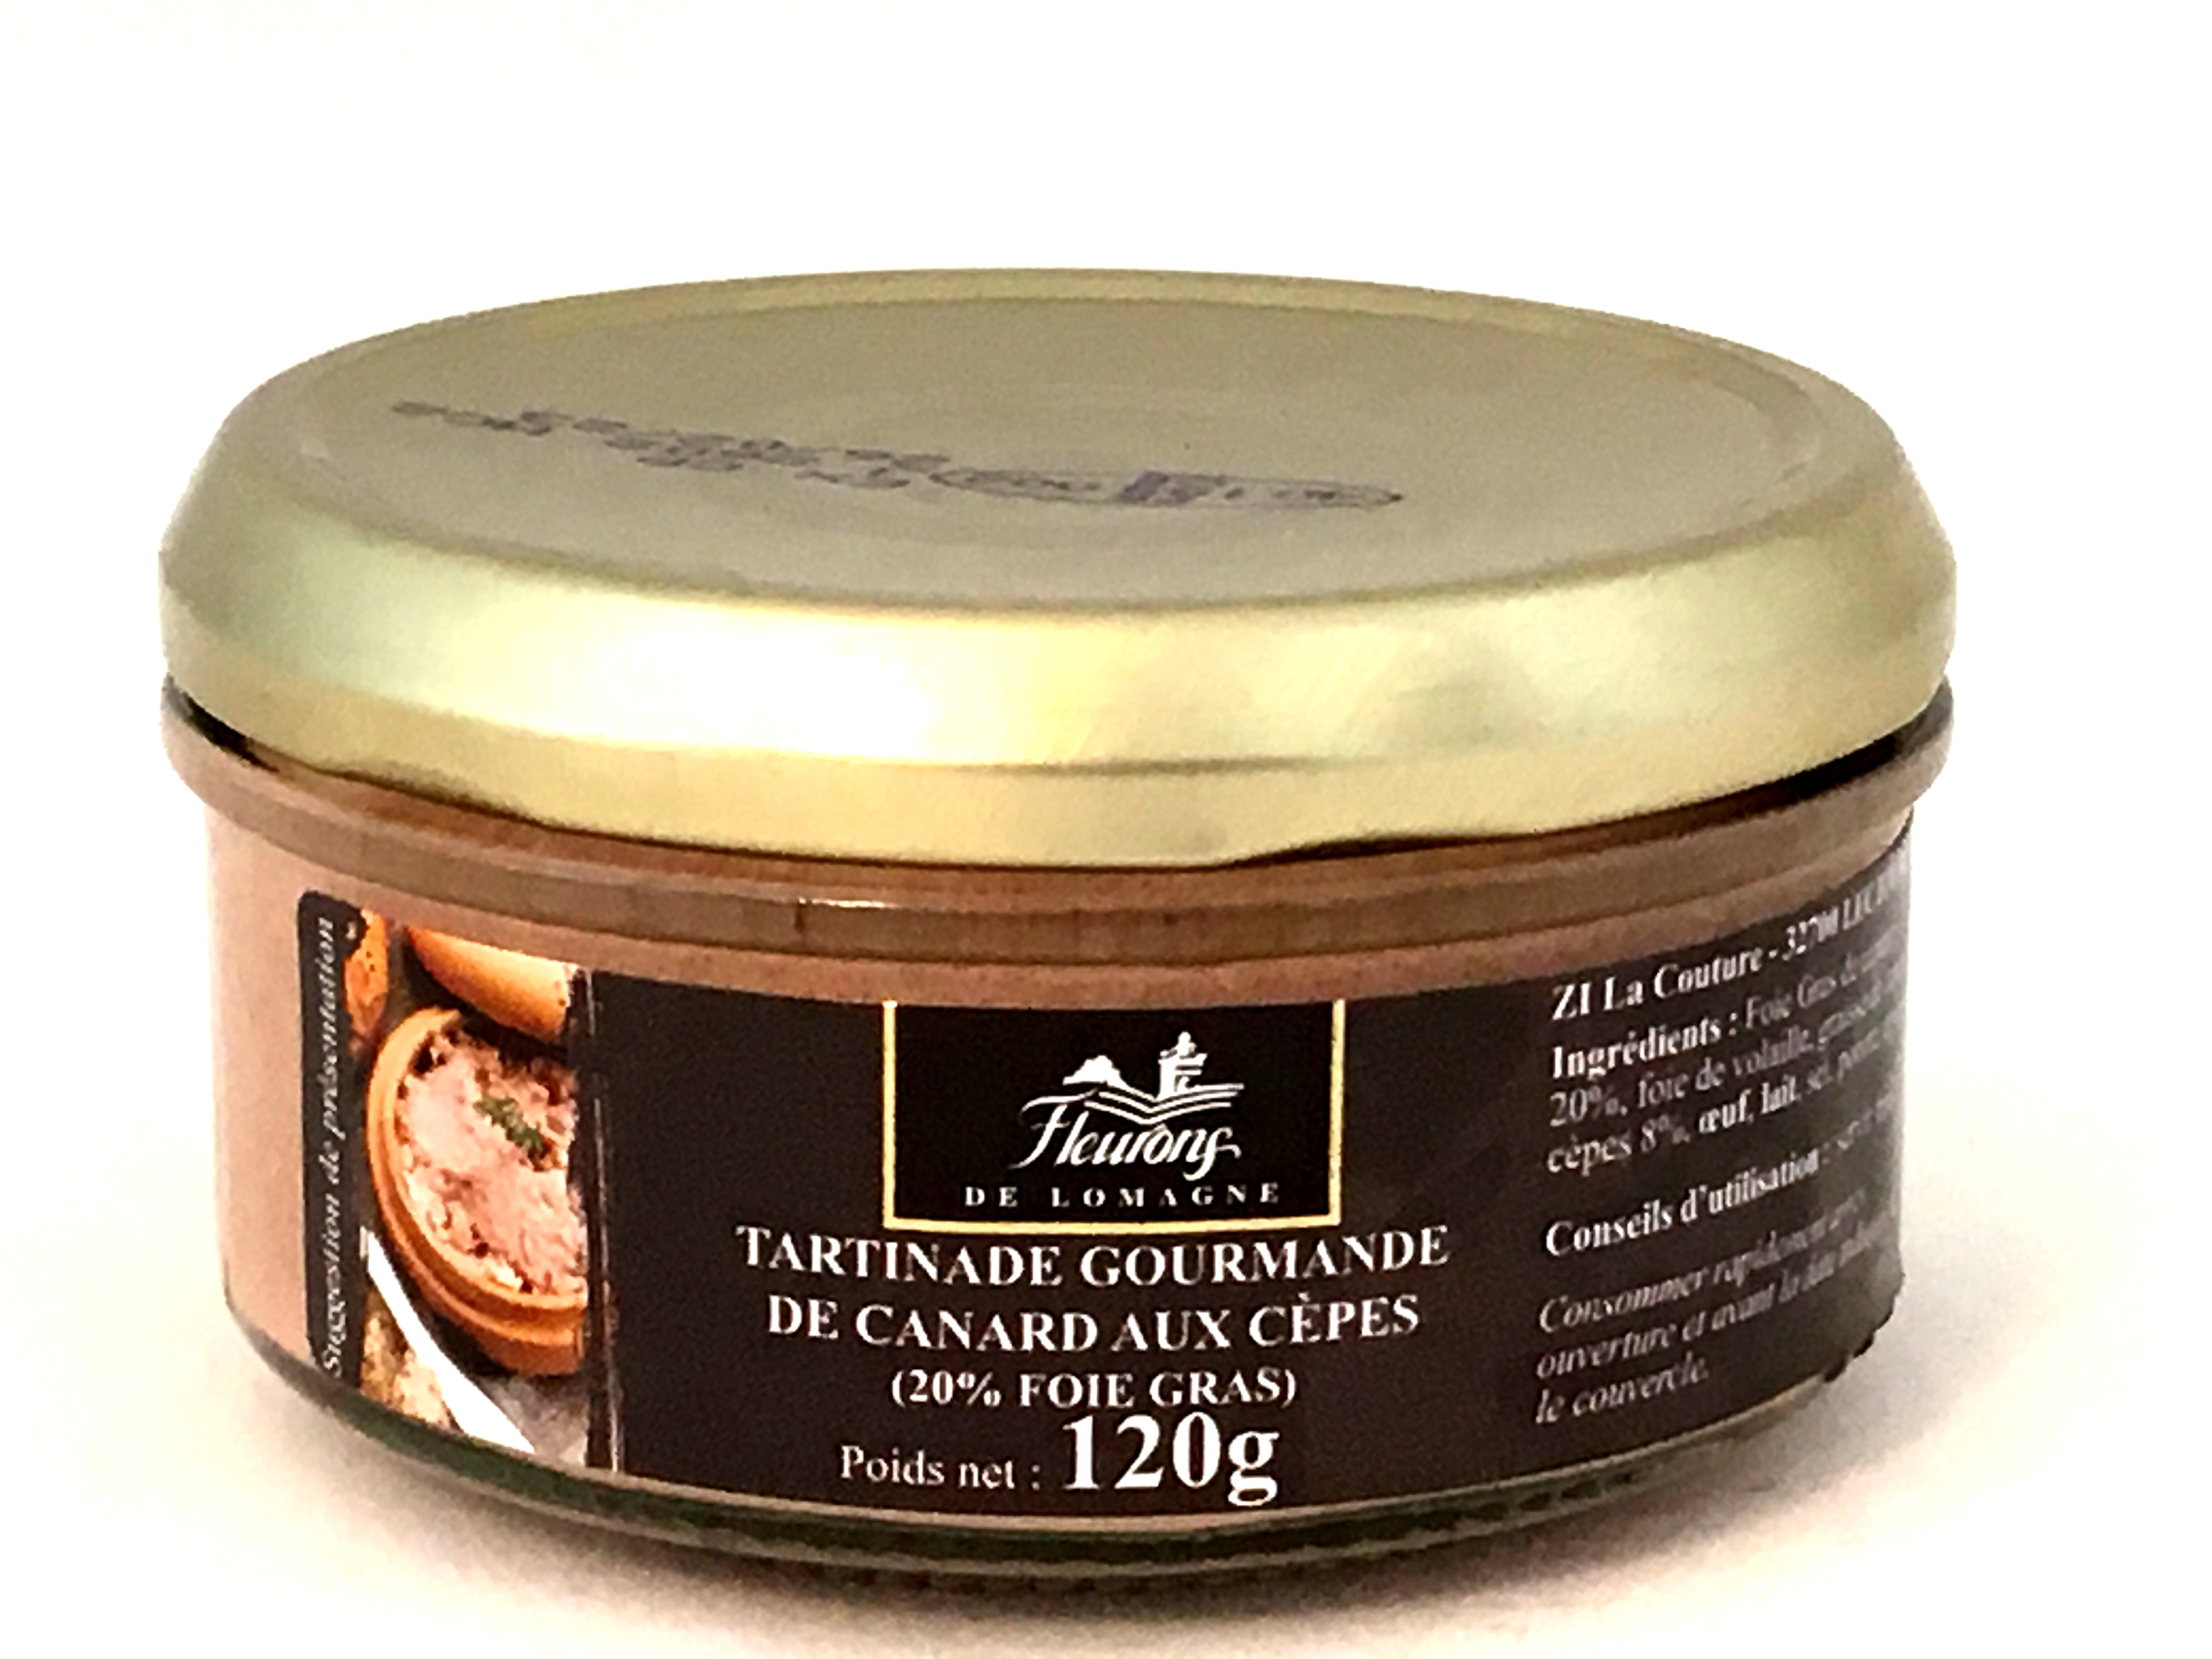 Tartinade gourmande de canard aux cèpes (20% Foie gras) 120g